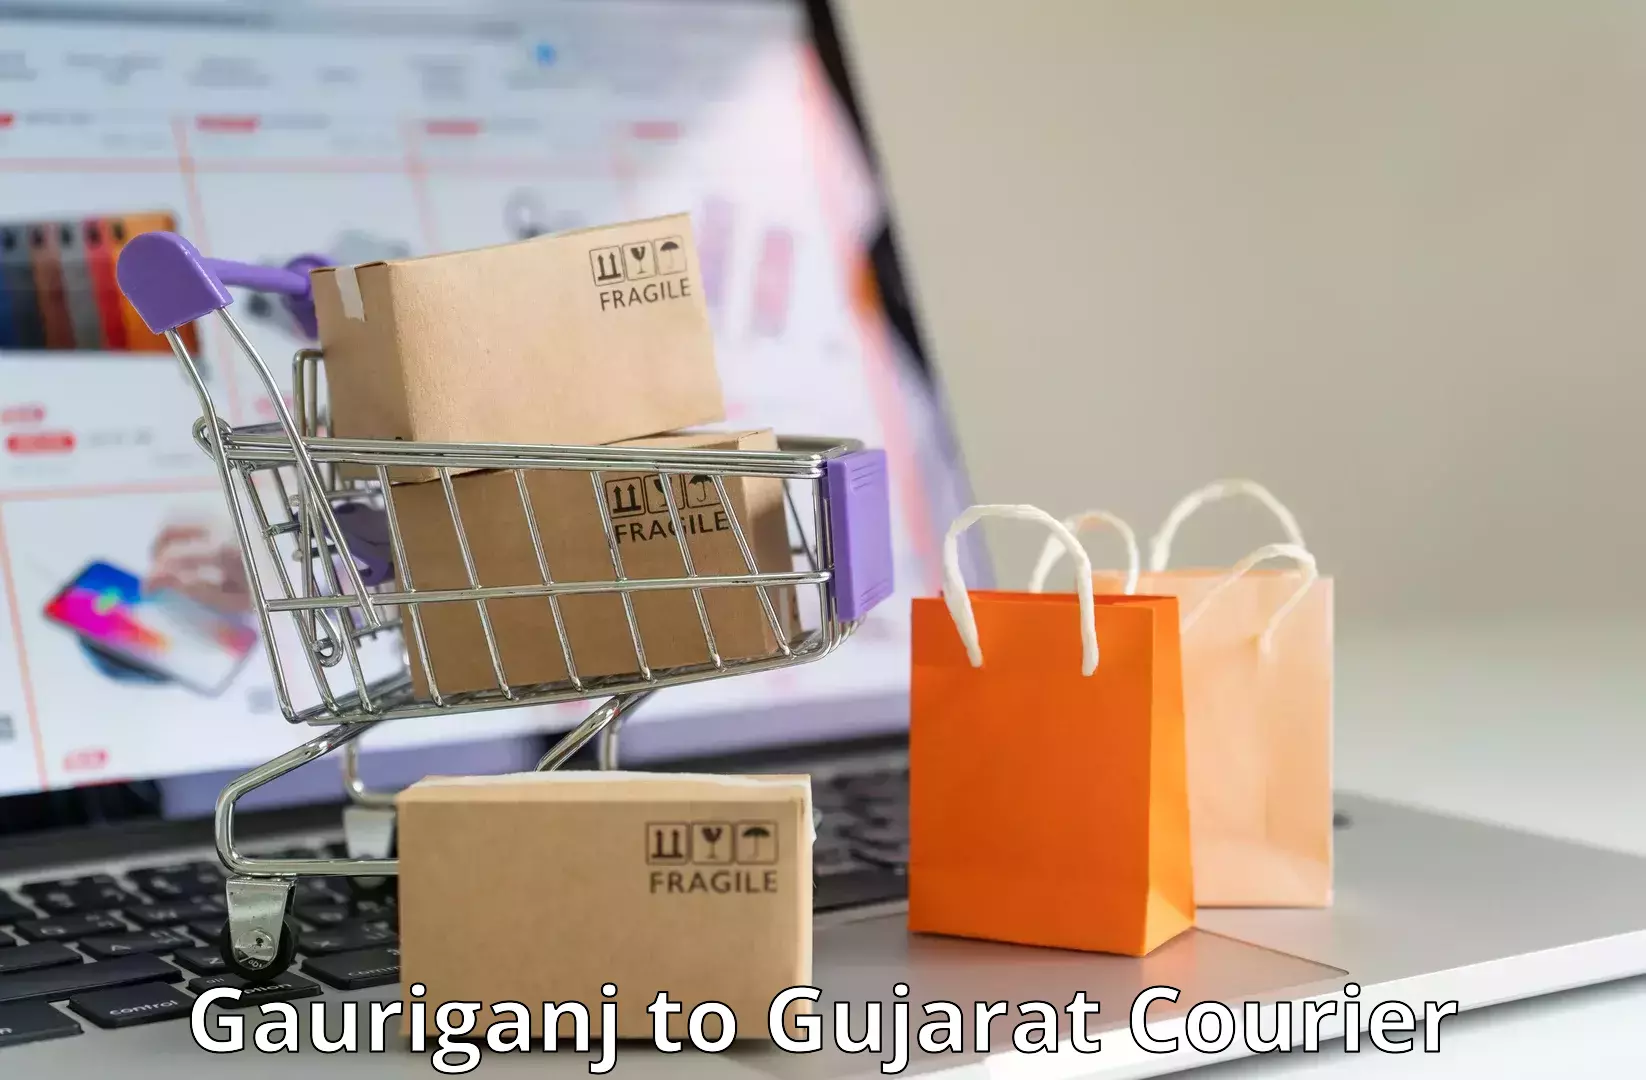 Affordable parcel service Gauriganj to Rajula